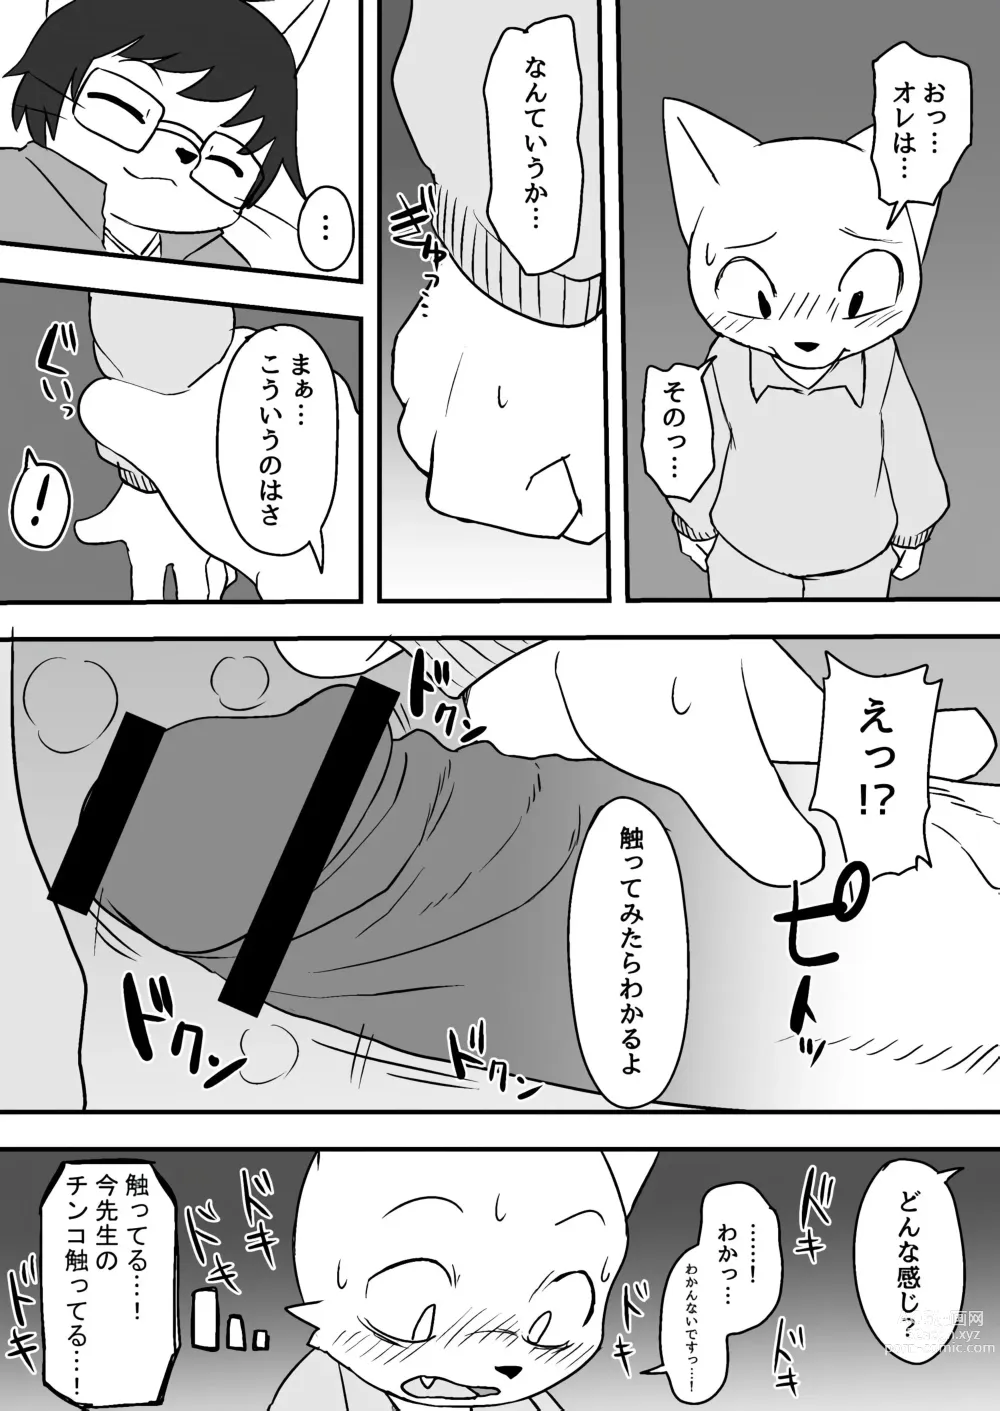 Page 4 of doujinshi Manmosu Marimo - Sensei Story #1